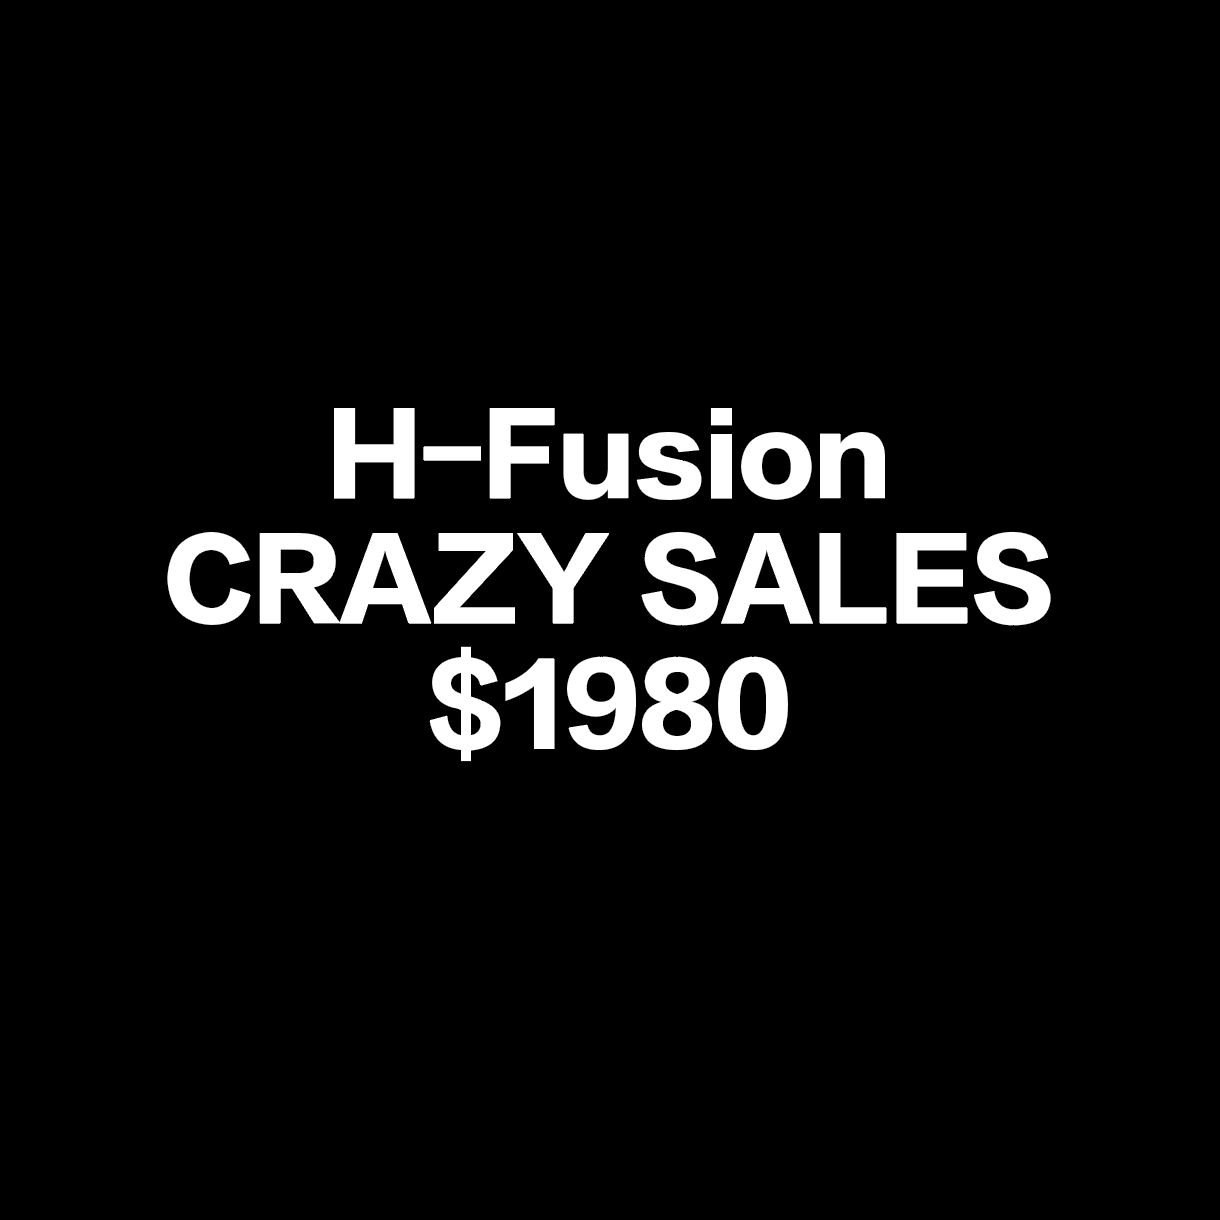 H-fusion 限時瘋狂減價 全部$1980